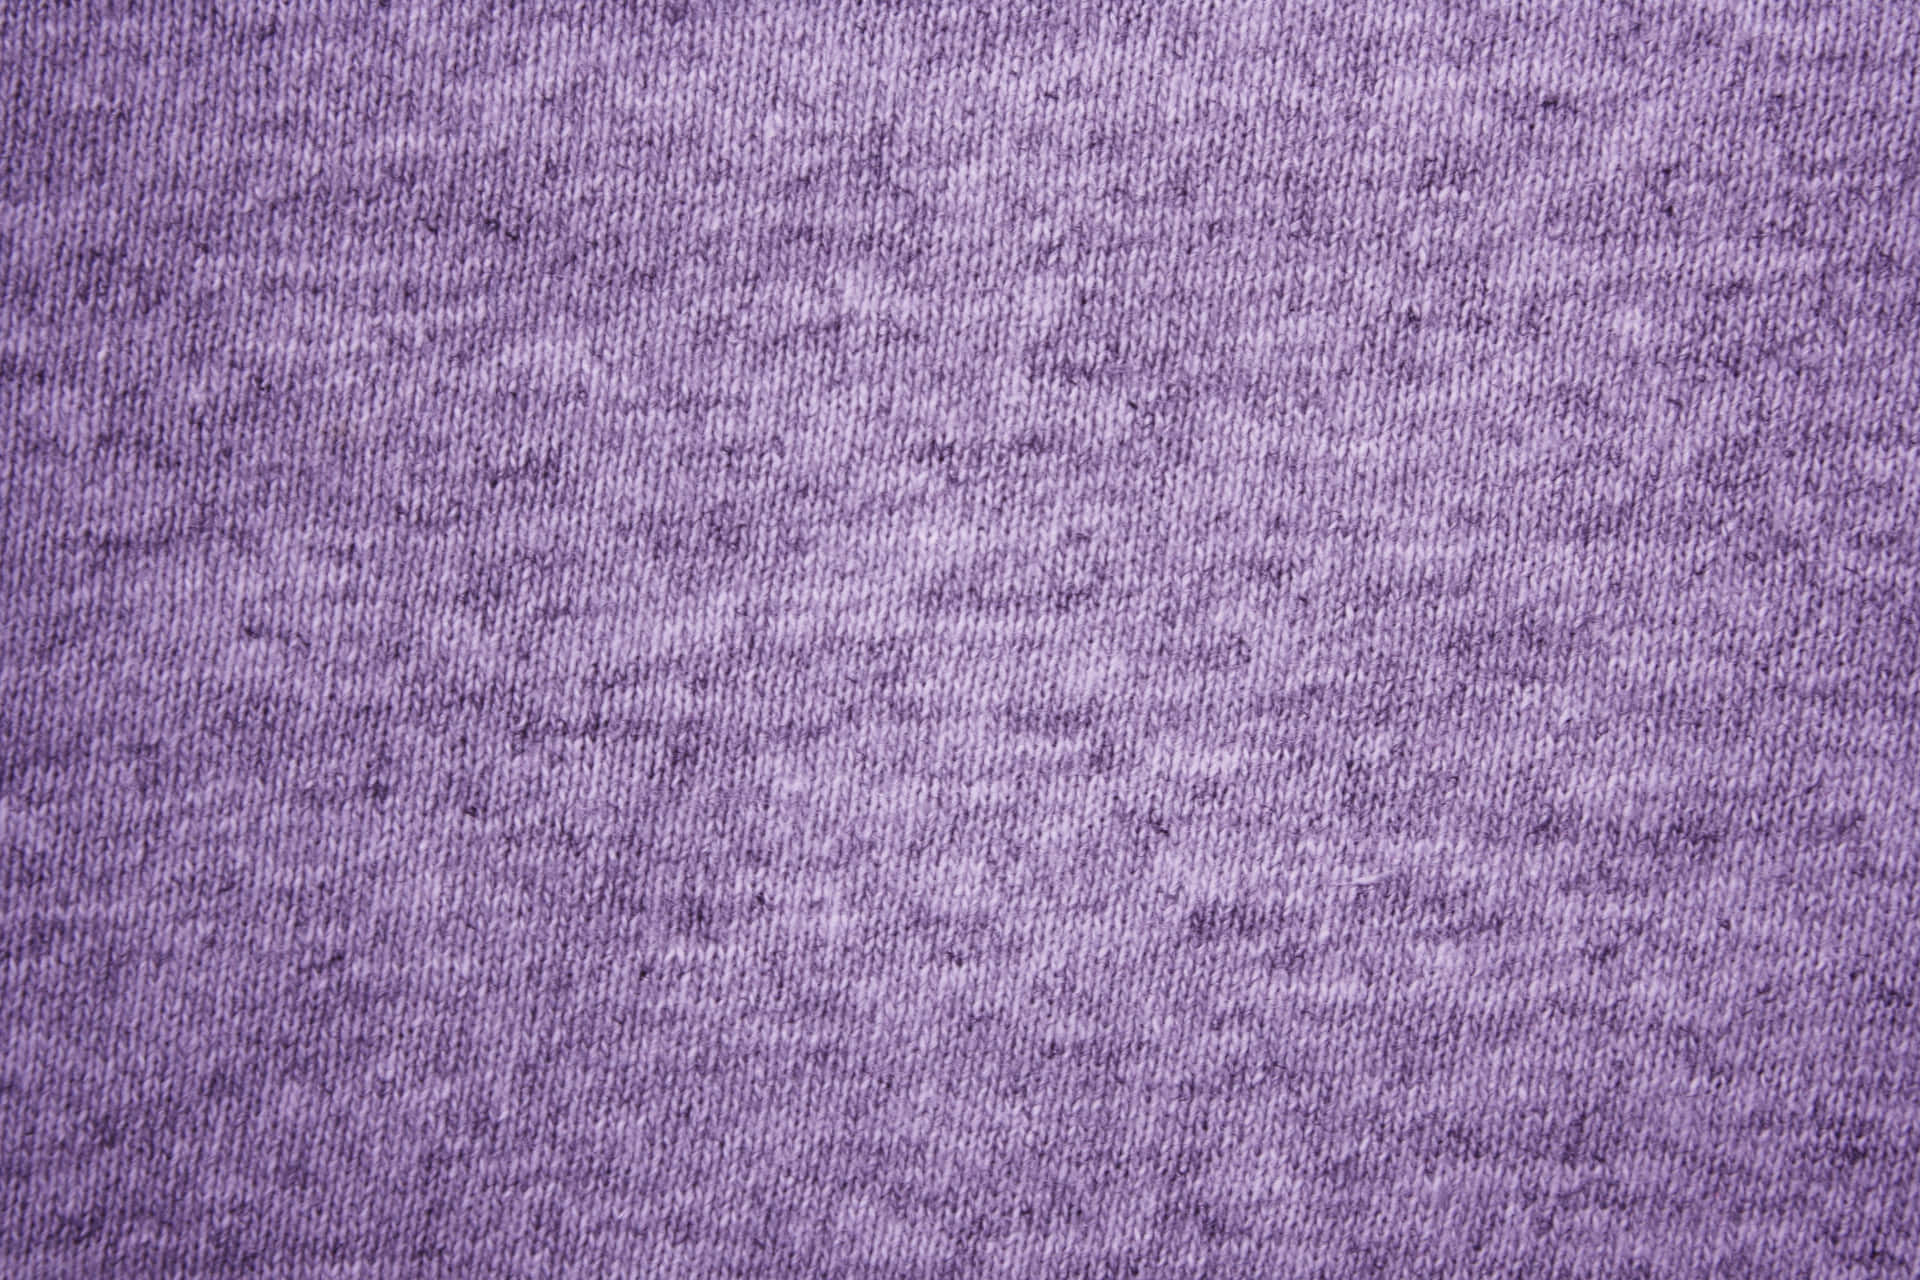 Fotosde Textura De Tela De Lana Tejida Color Púrpura Brezo